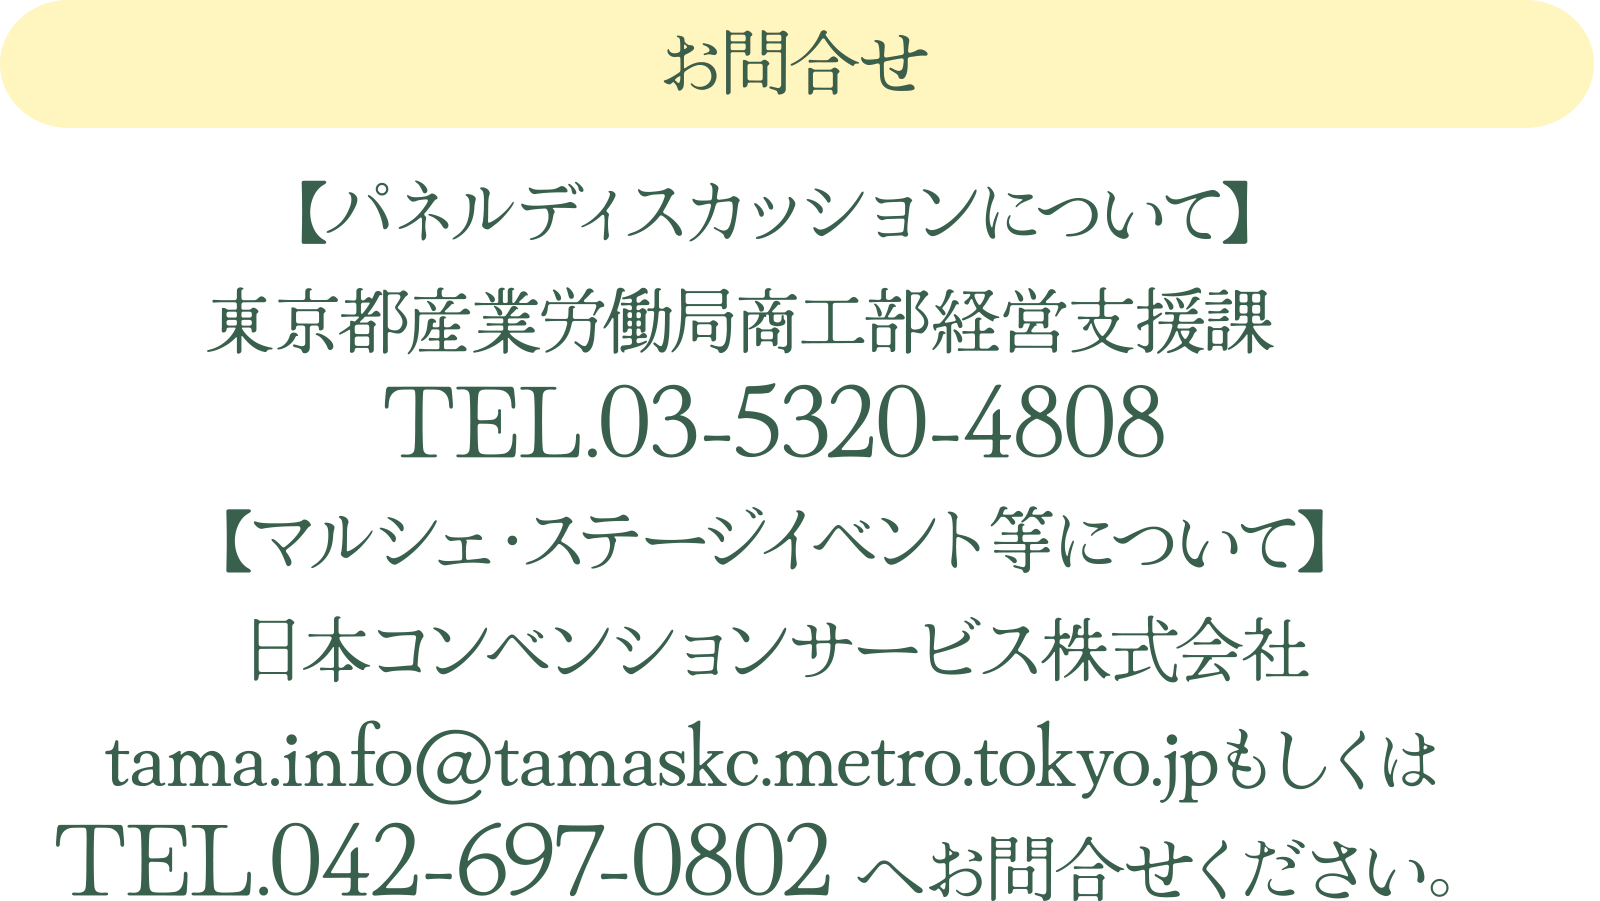 
₢킹
yplfBXJbVɂāz
sYƘJǏHocxہ@
TEL.03-5320-4808
y}VFEXe[WCxgɂāz
{RxVT[rX
tama.info@tamaskc.metro.tokyo.jp
TEL.042-697-0802 ւ⍇B	
